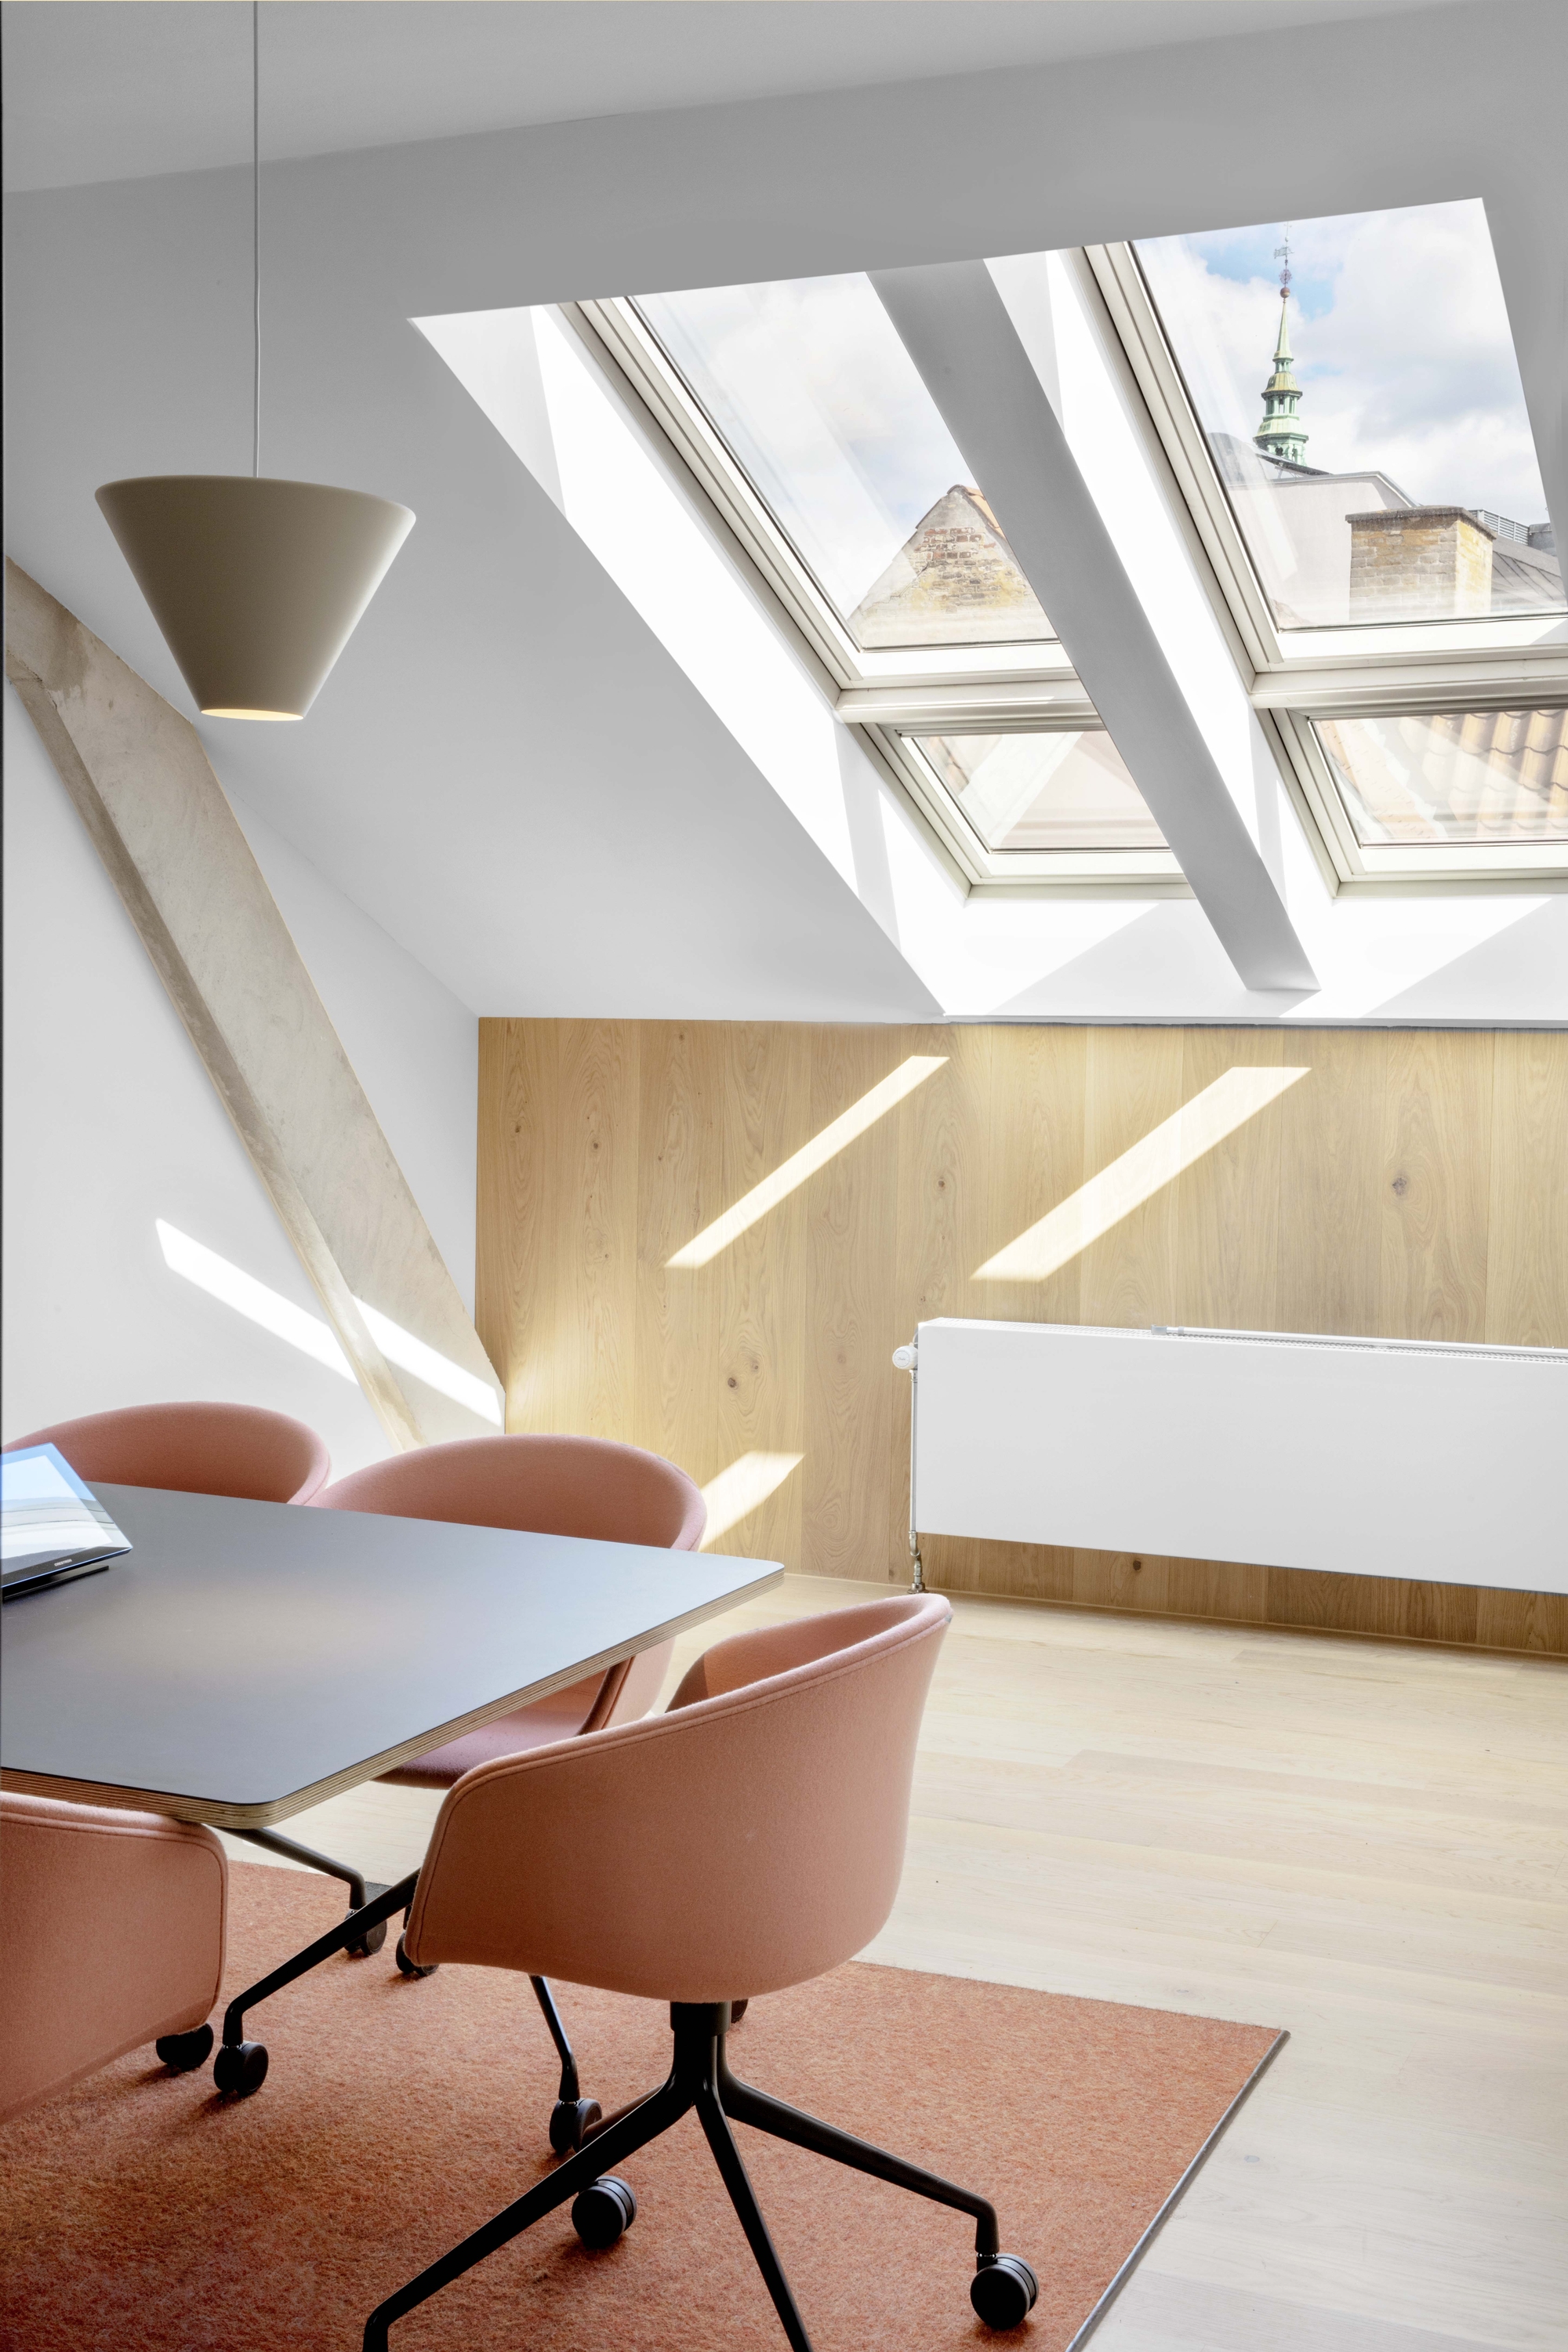 图片[8]|哥本哈根联合办事处|ART-Arrakis | 建筑室内设计的创新与灵感